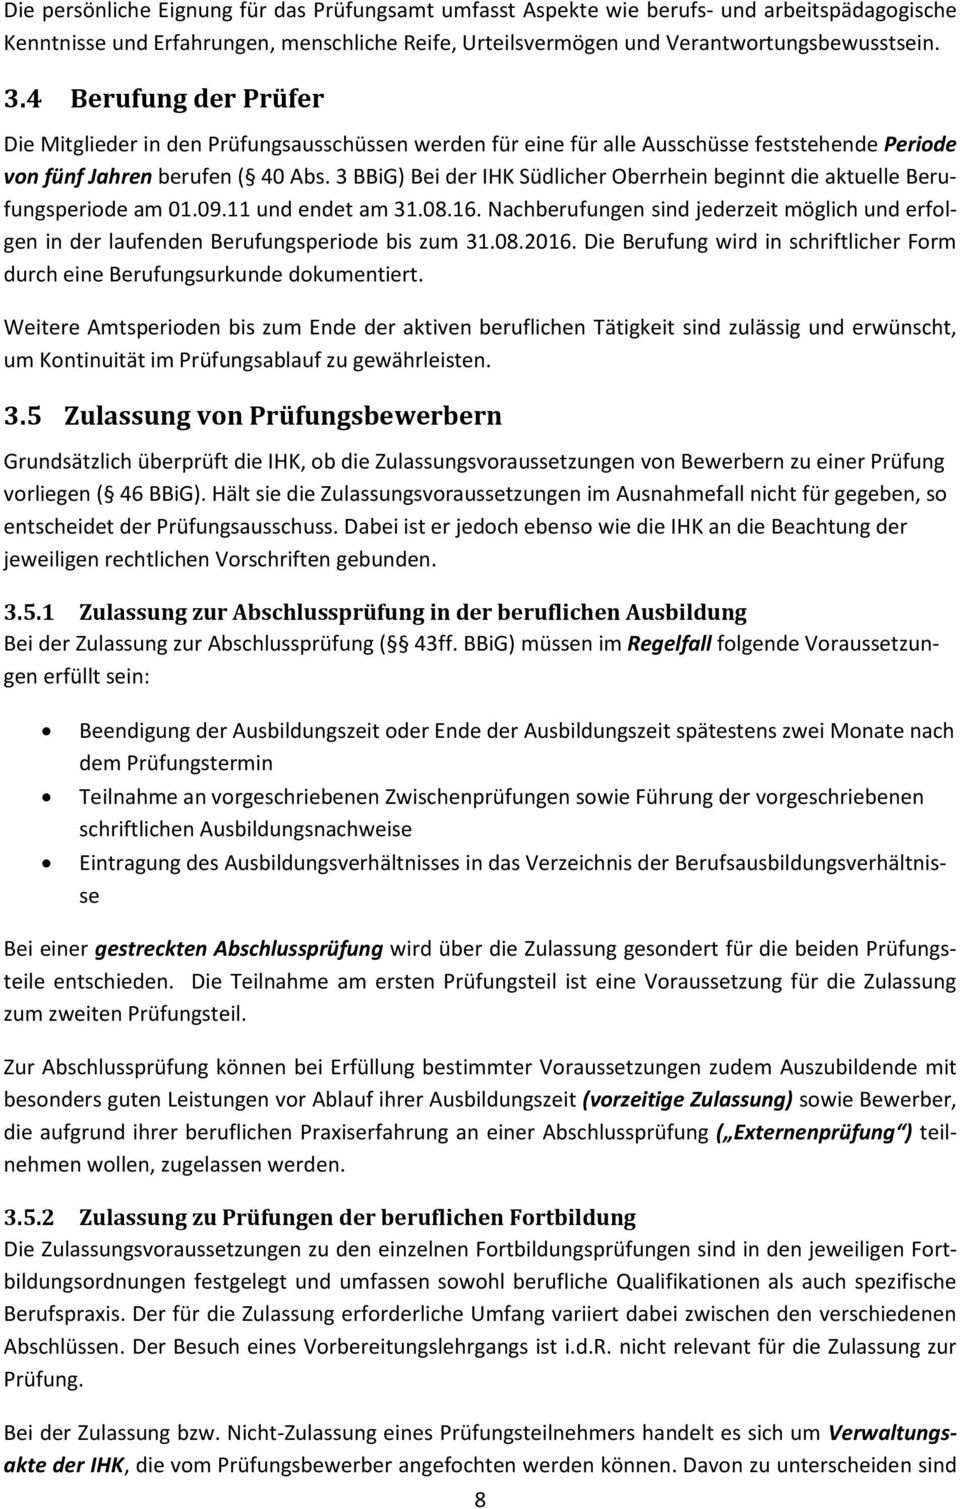 3 BBiG) Bei der IHK Südlicher Oberrhein beginnt die aktuelle Berufungsperiode am 01.09.11 und endet am 31.08.16.